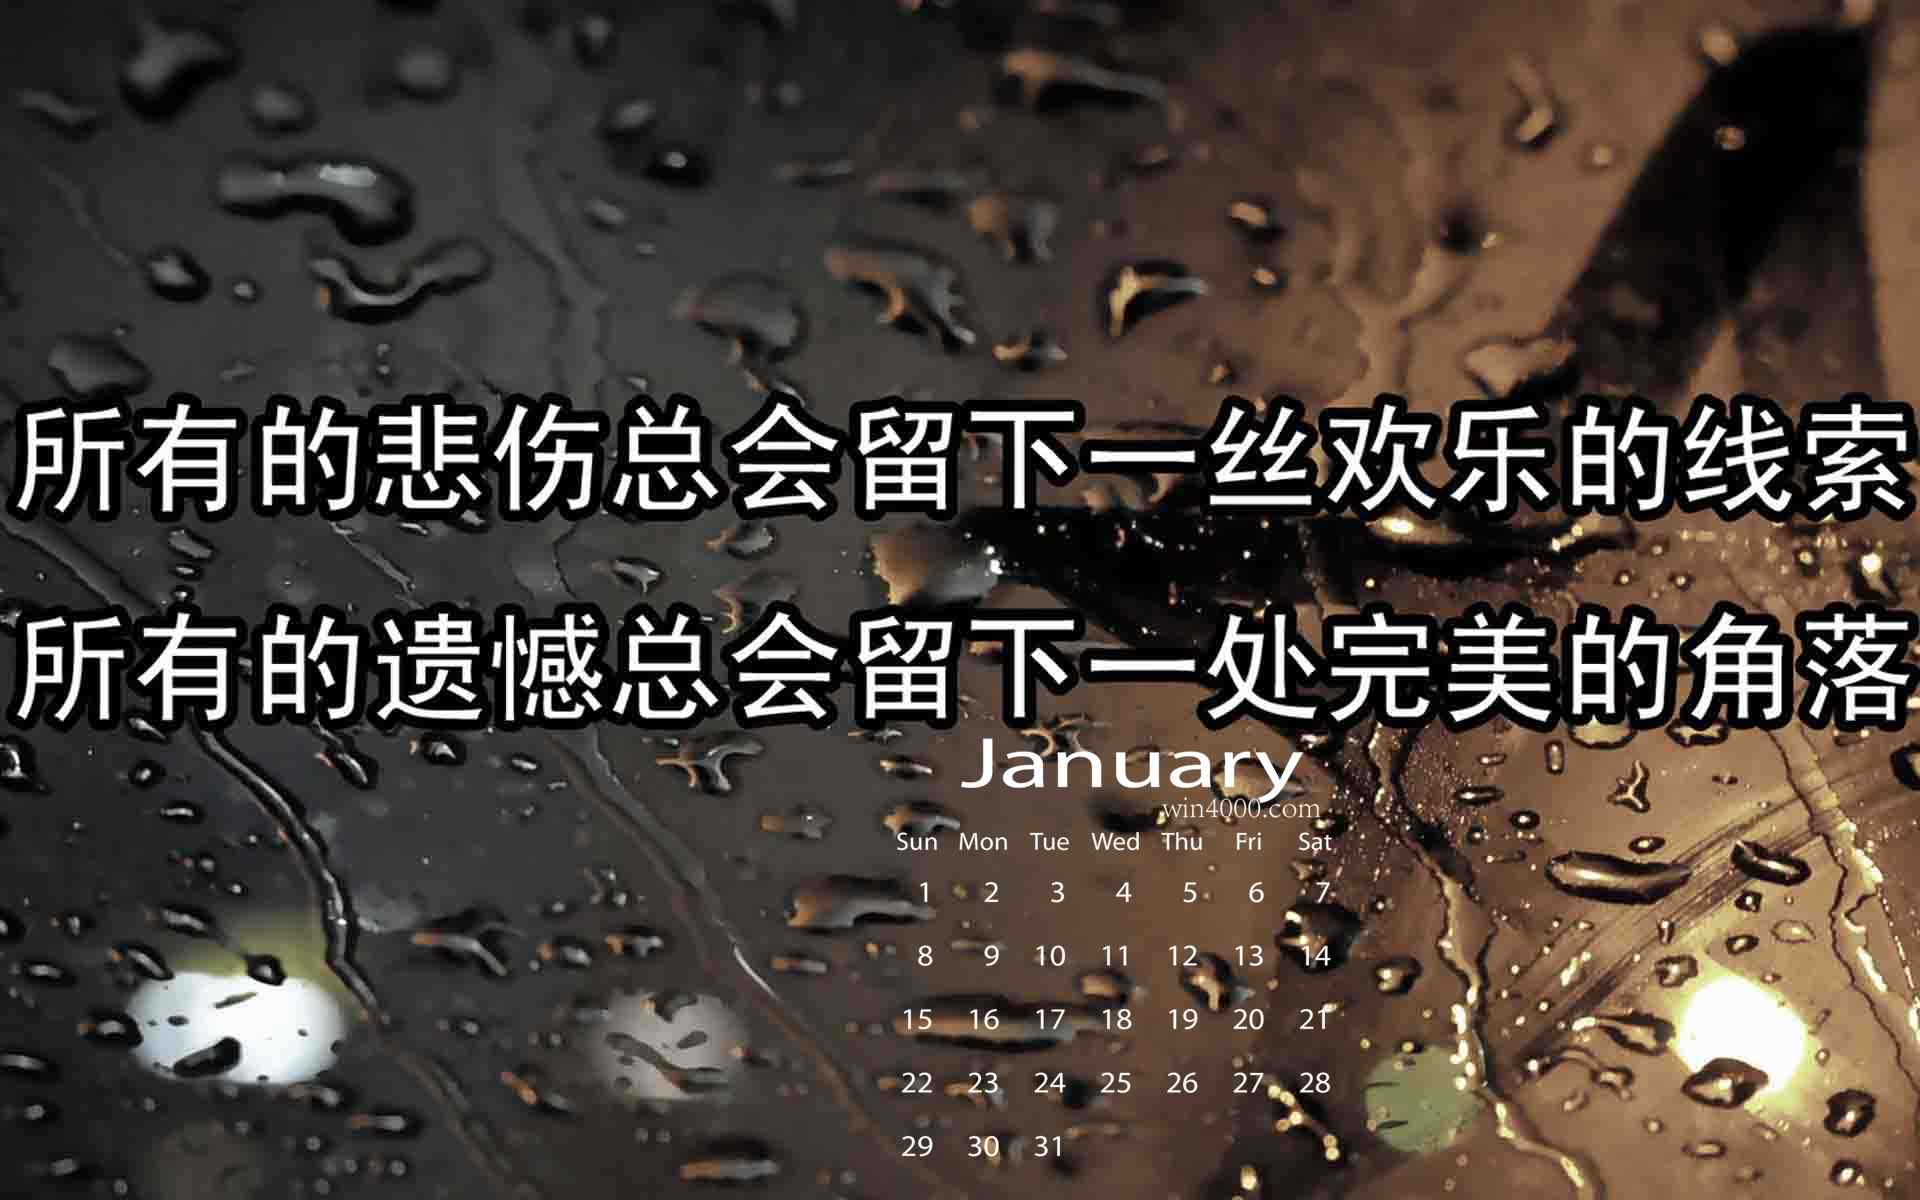 2017年1月日历创意文字图片桌面壁纸